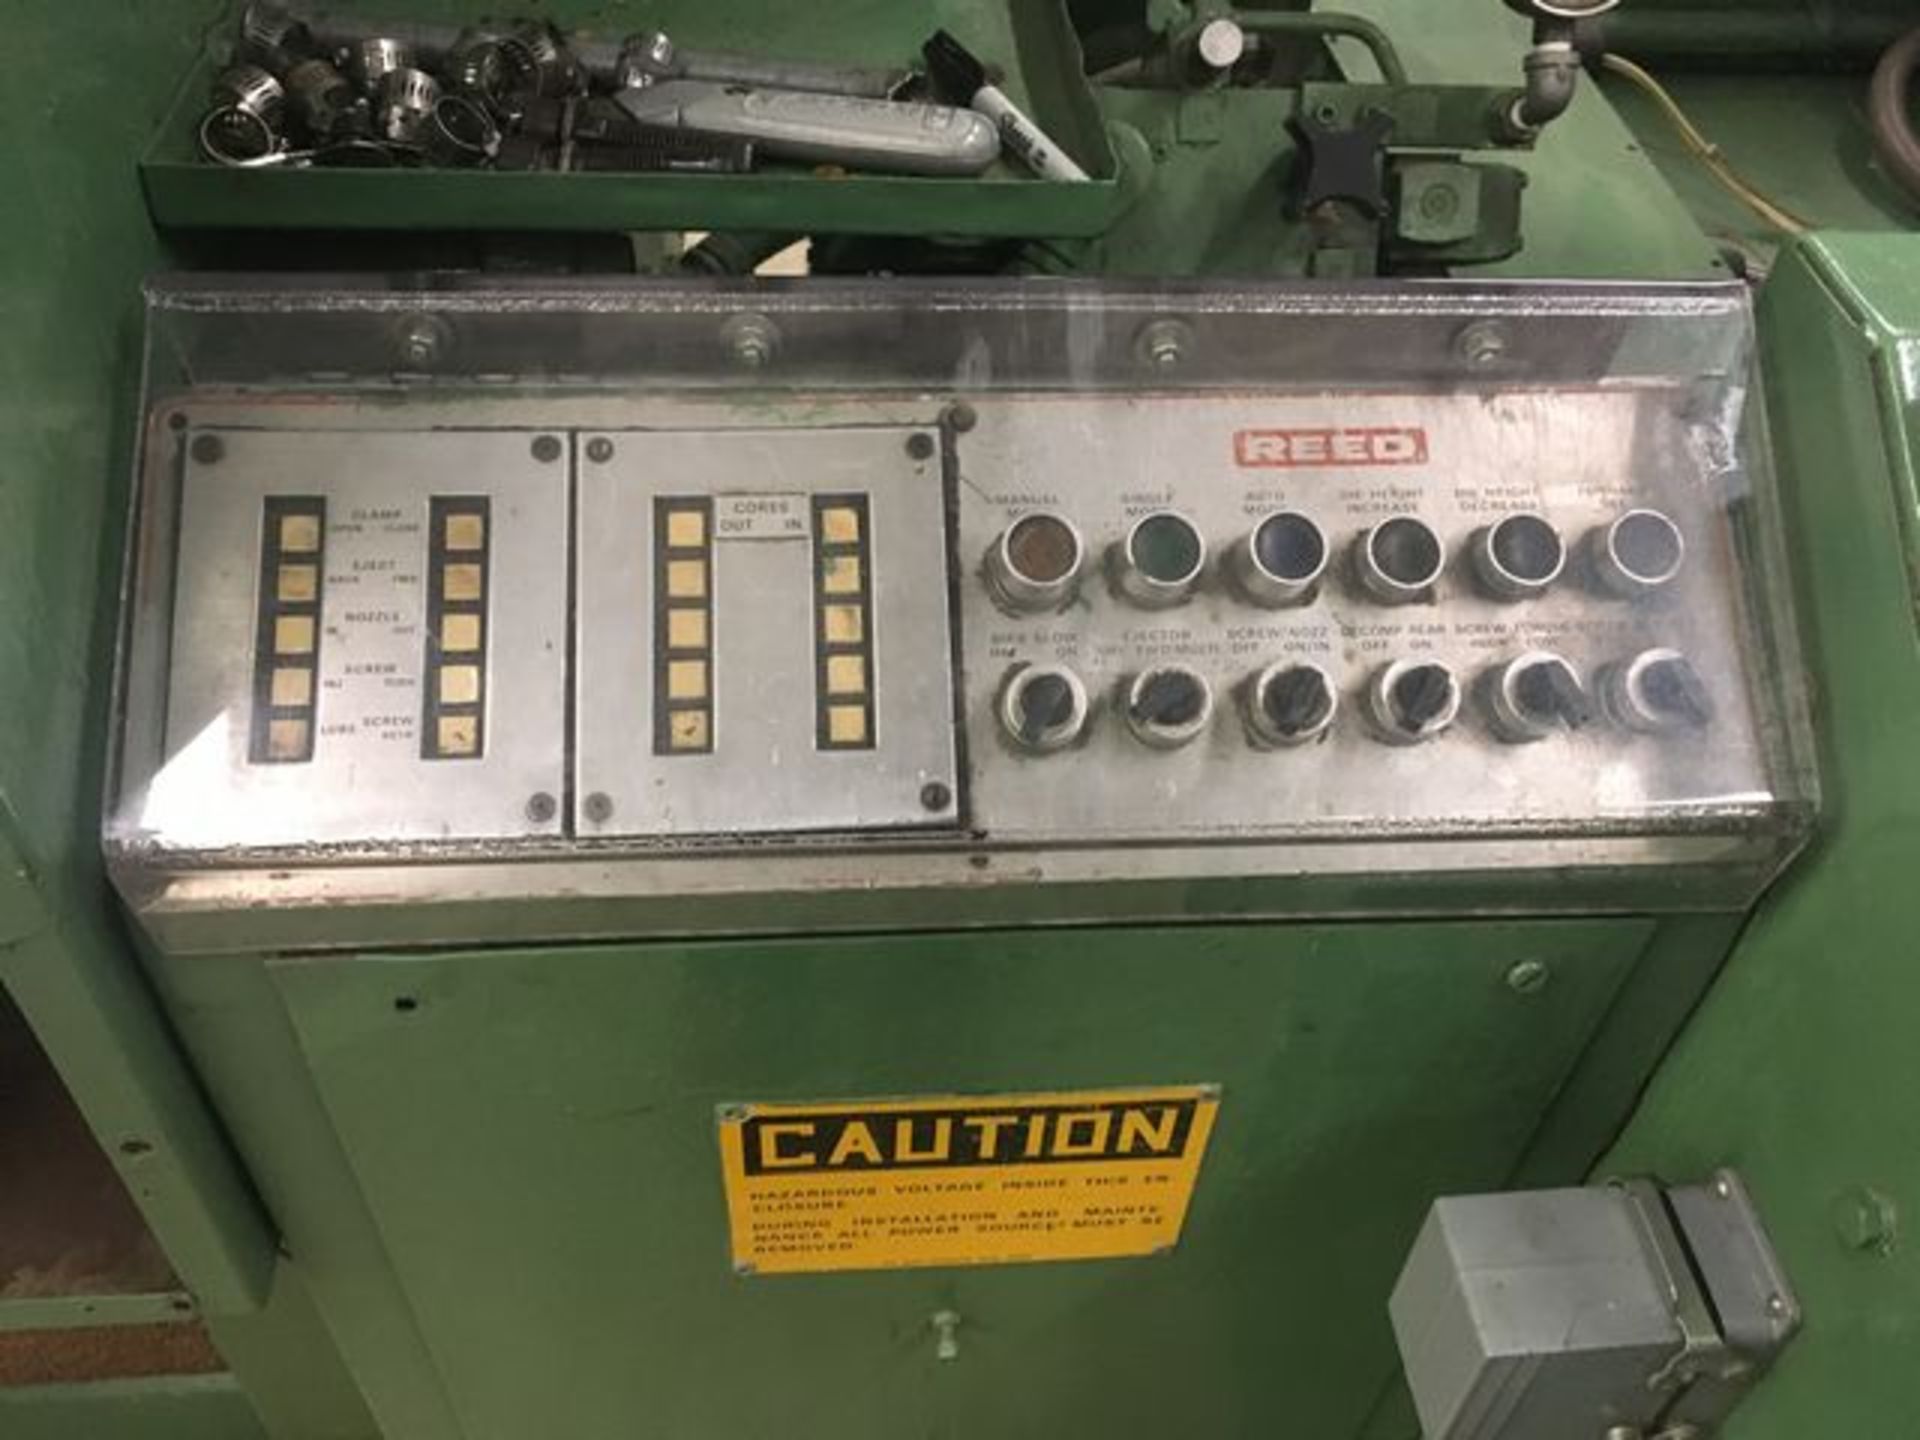 Reed 250 TG 250 Ton Injection Molding Machine - Image 6 of 7